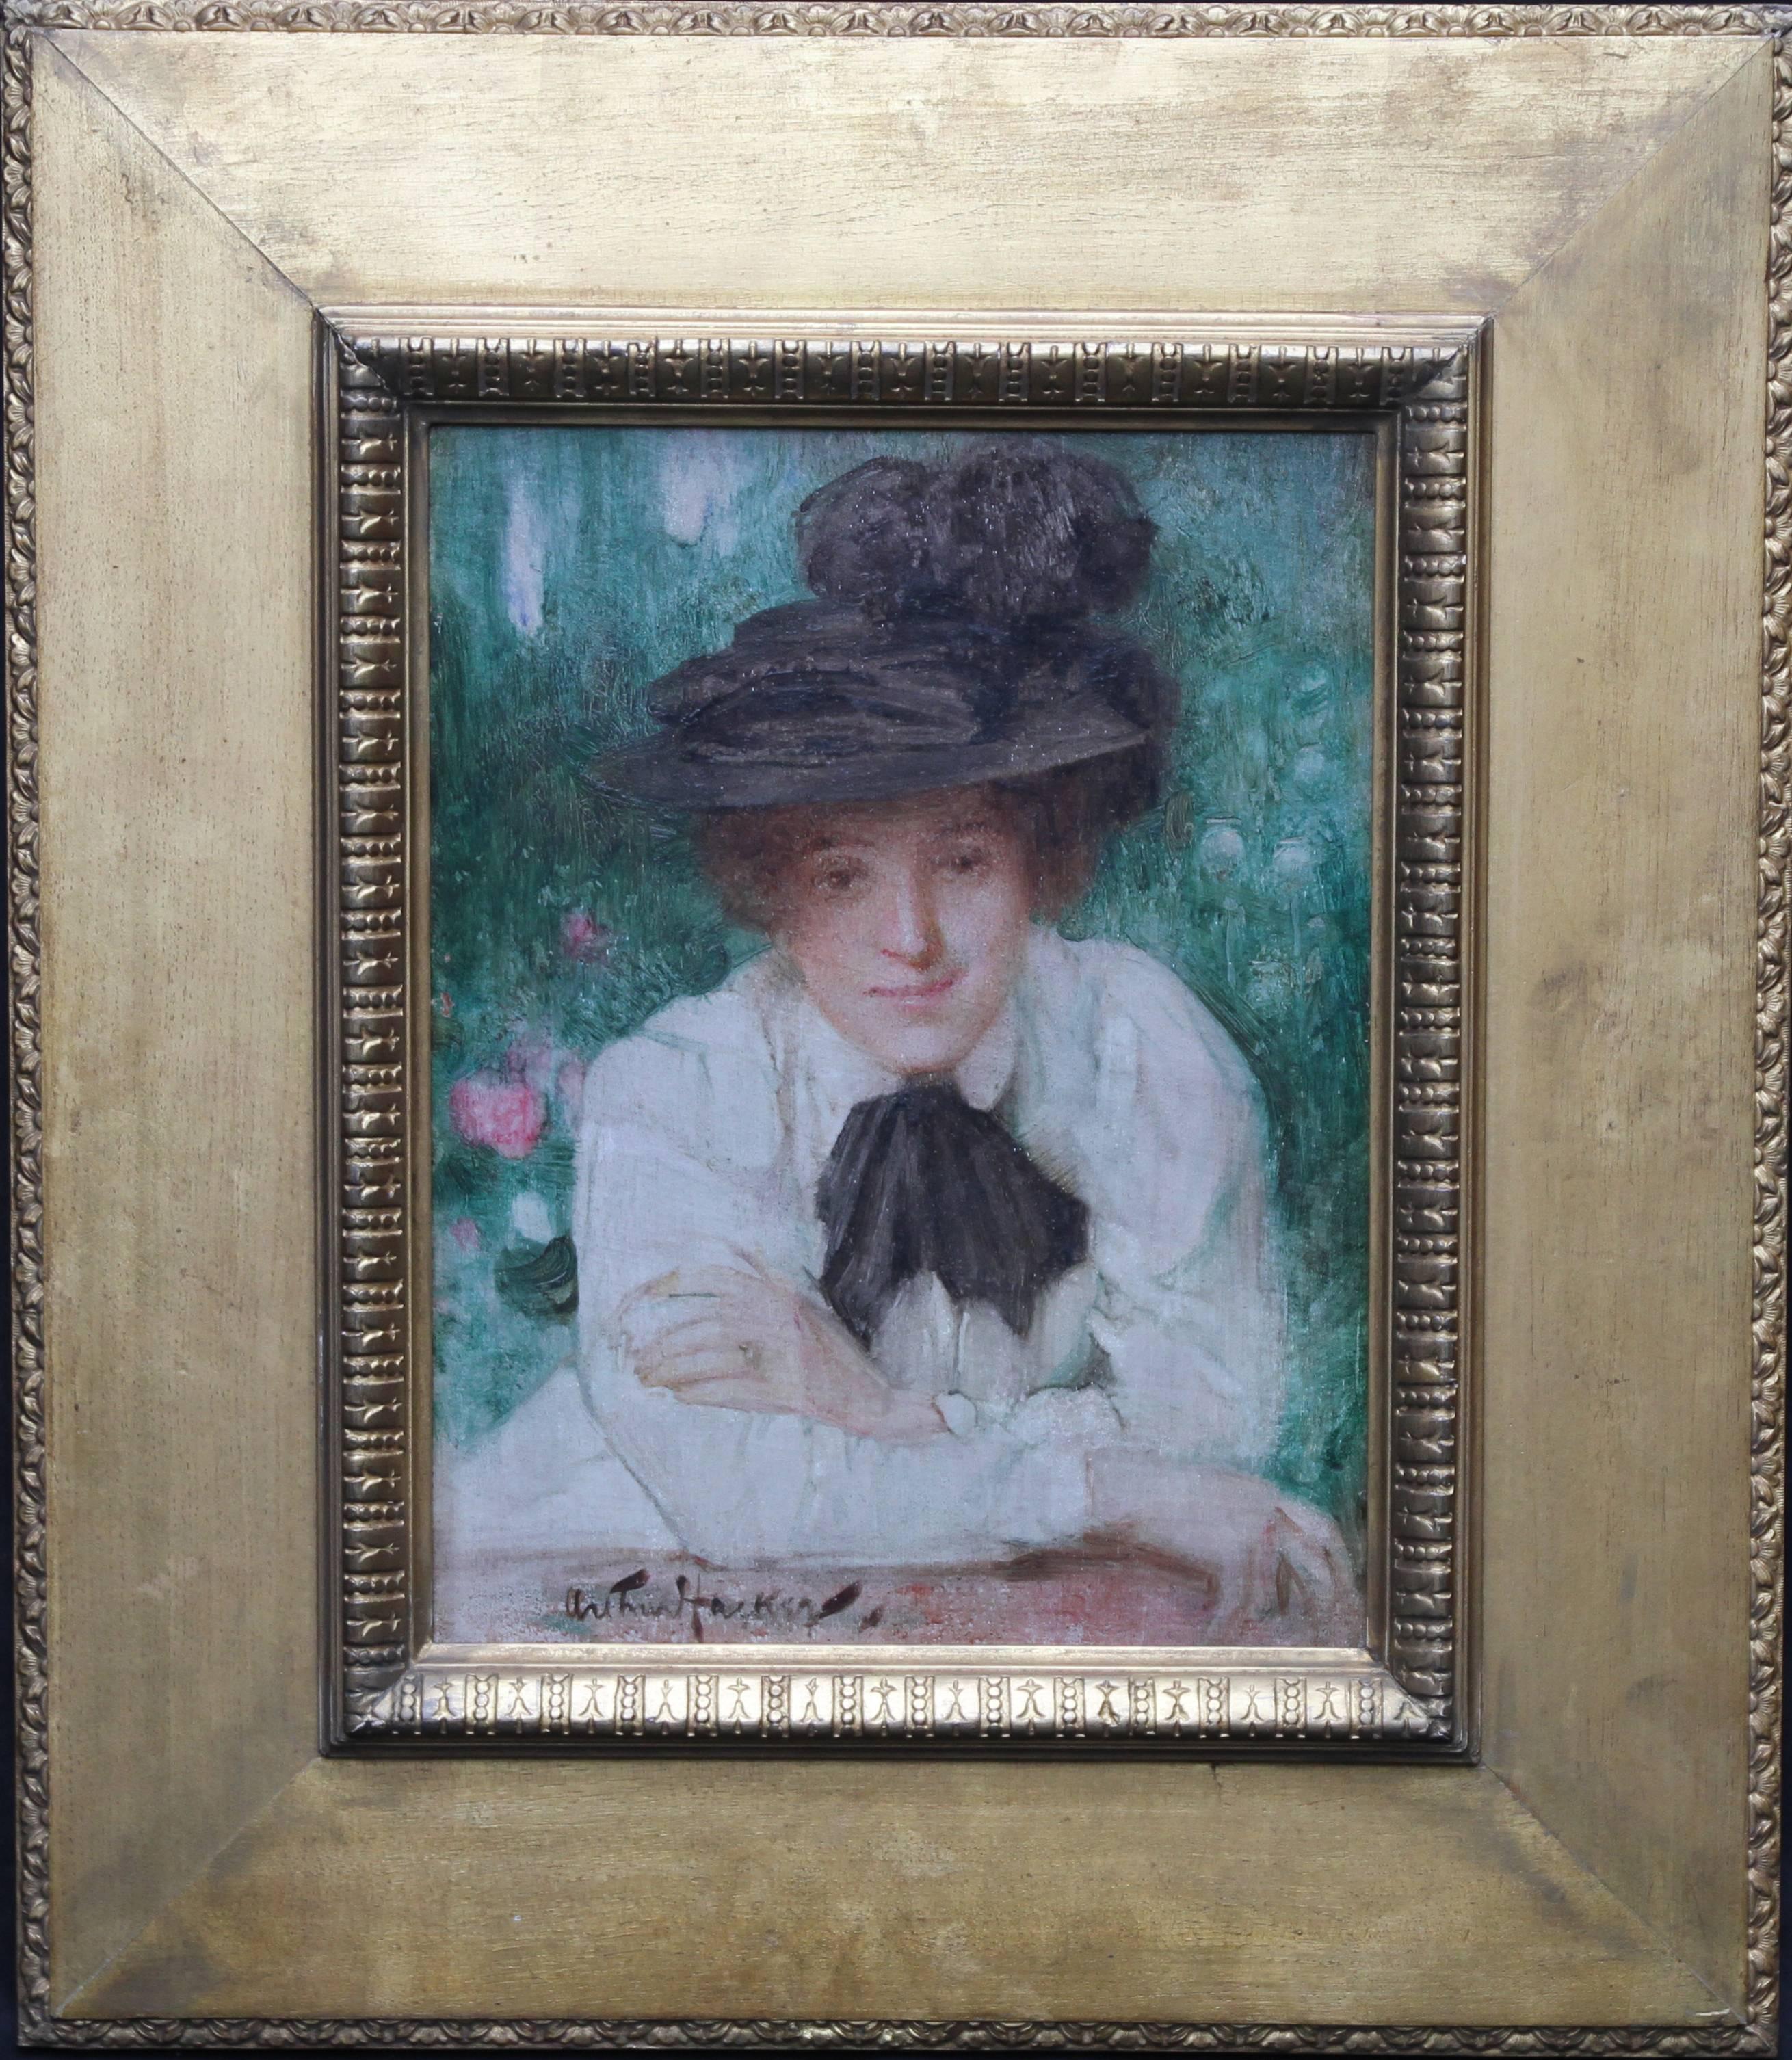 Arthur Hacker Portrait Painting - Portrait of an Edwardian Lady - British art Impressionist oil painting black hat